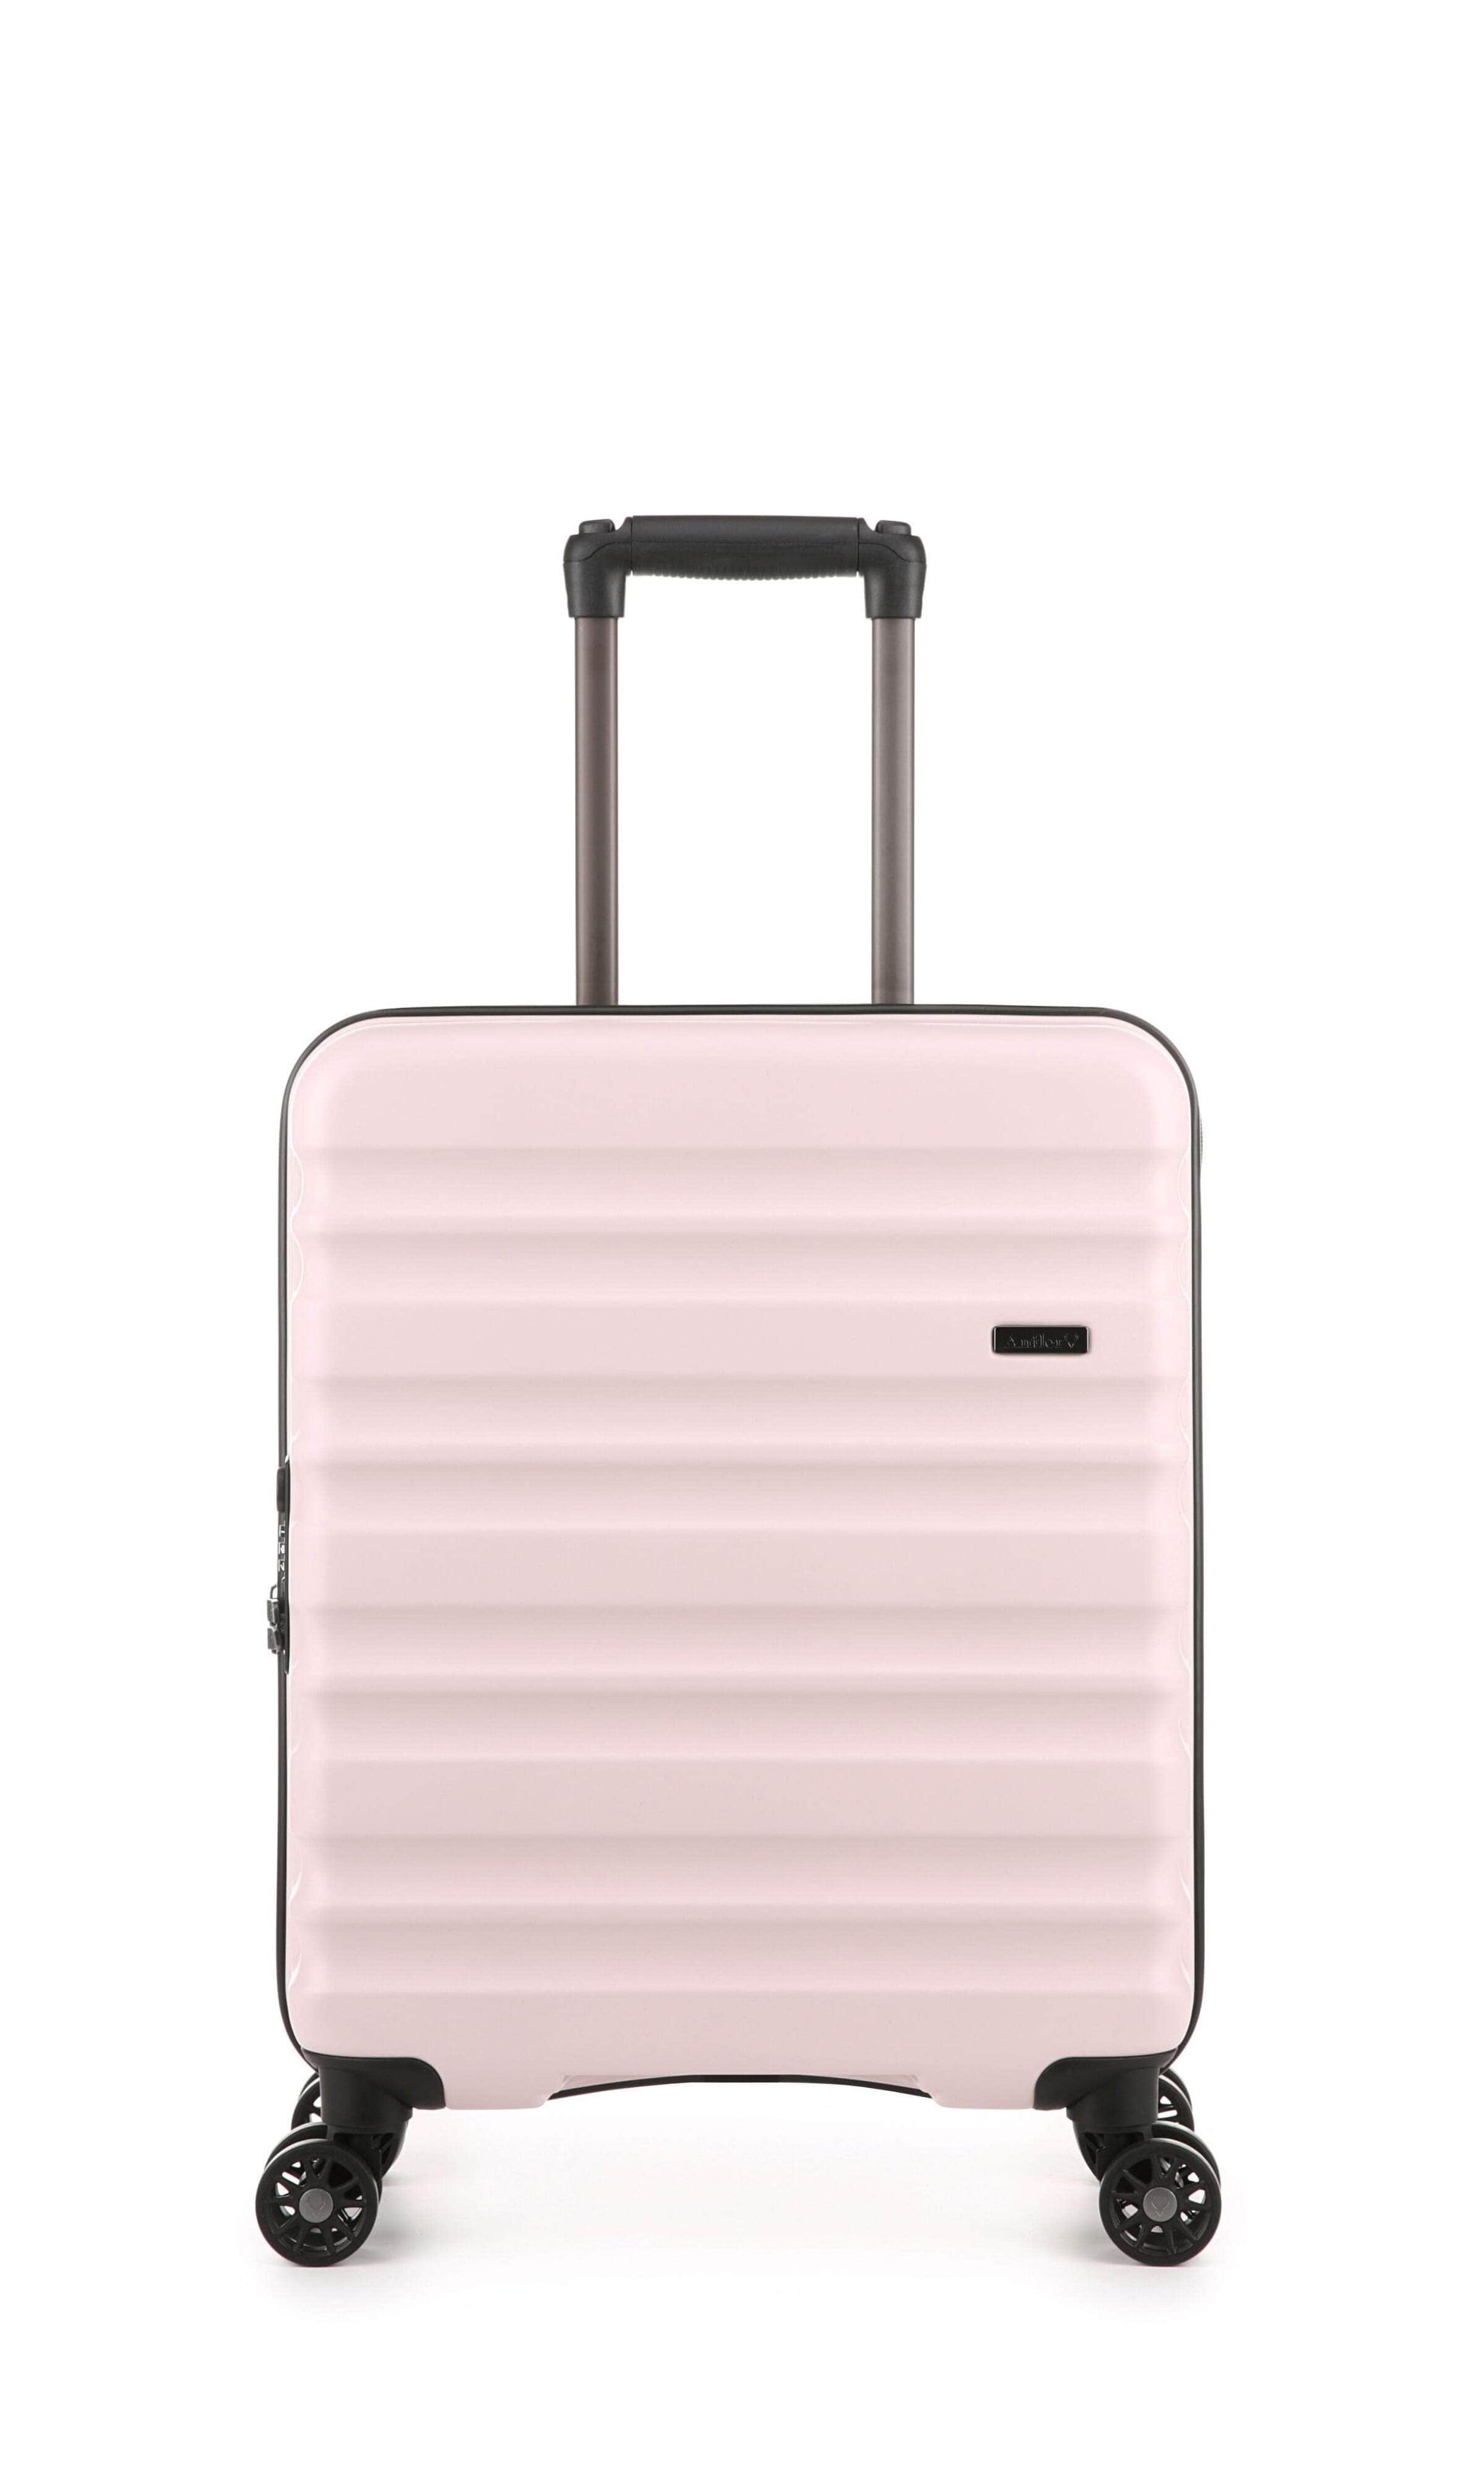 Antler Luggage -  Clifton cabin in blush - Hard Suitcases Clifton 55x40x20cm Cabin Suitcase Blush | Hard Suitcase | Antler UK